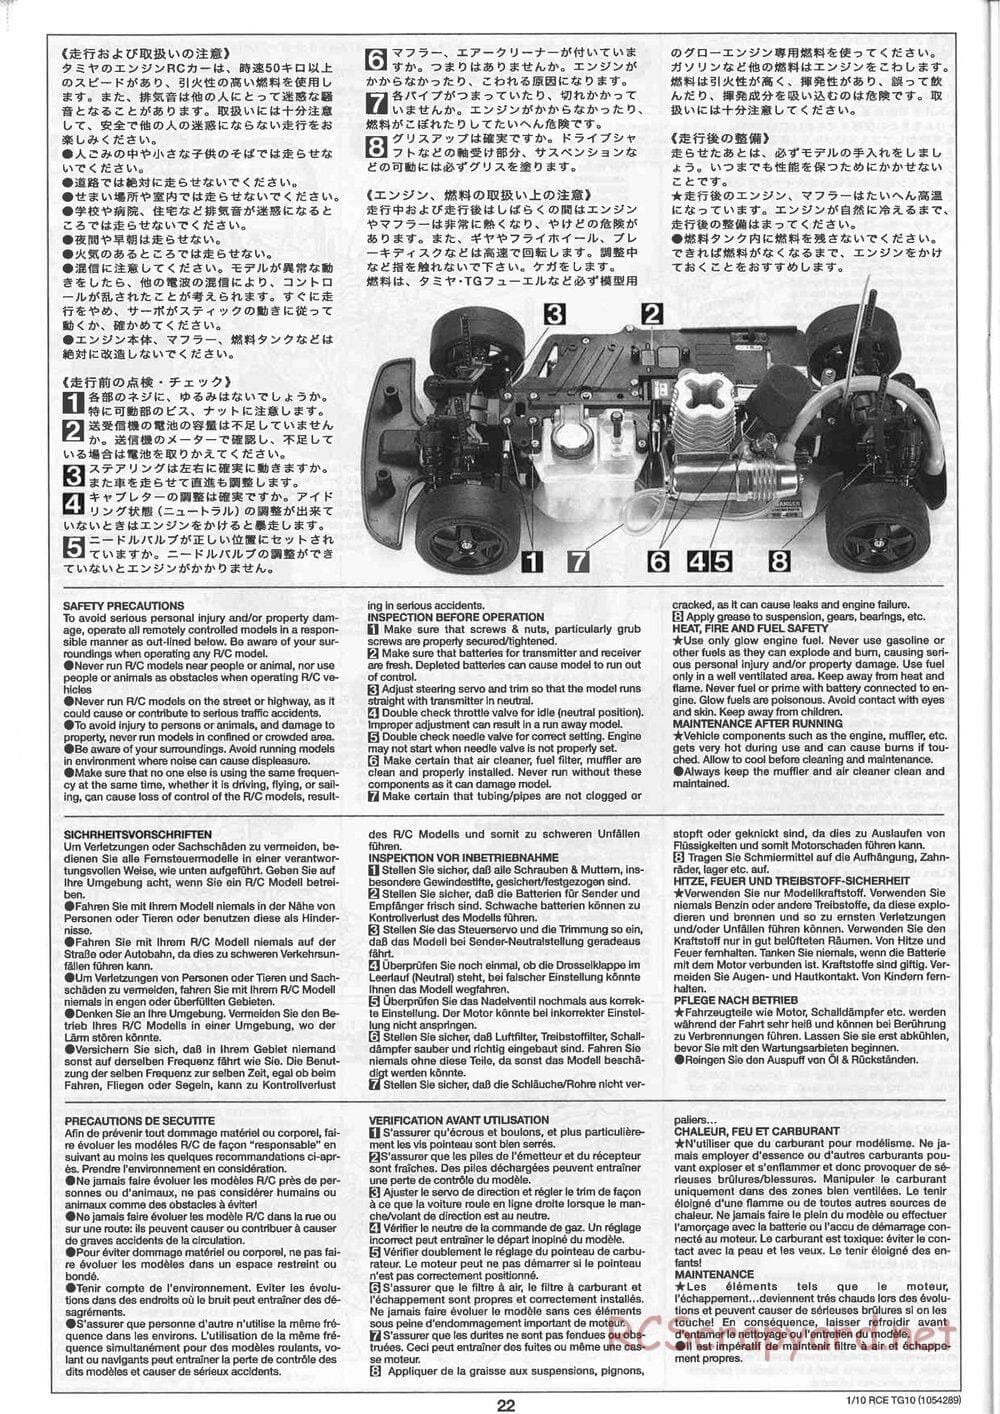 Tamiya - TG10 Mk.1 Chassis - Manual - Page 22